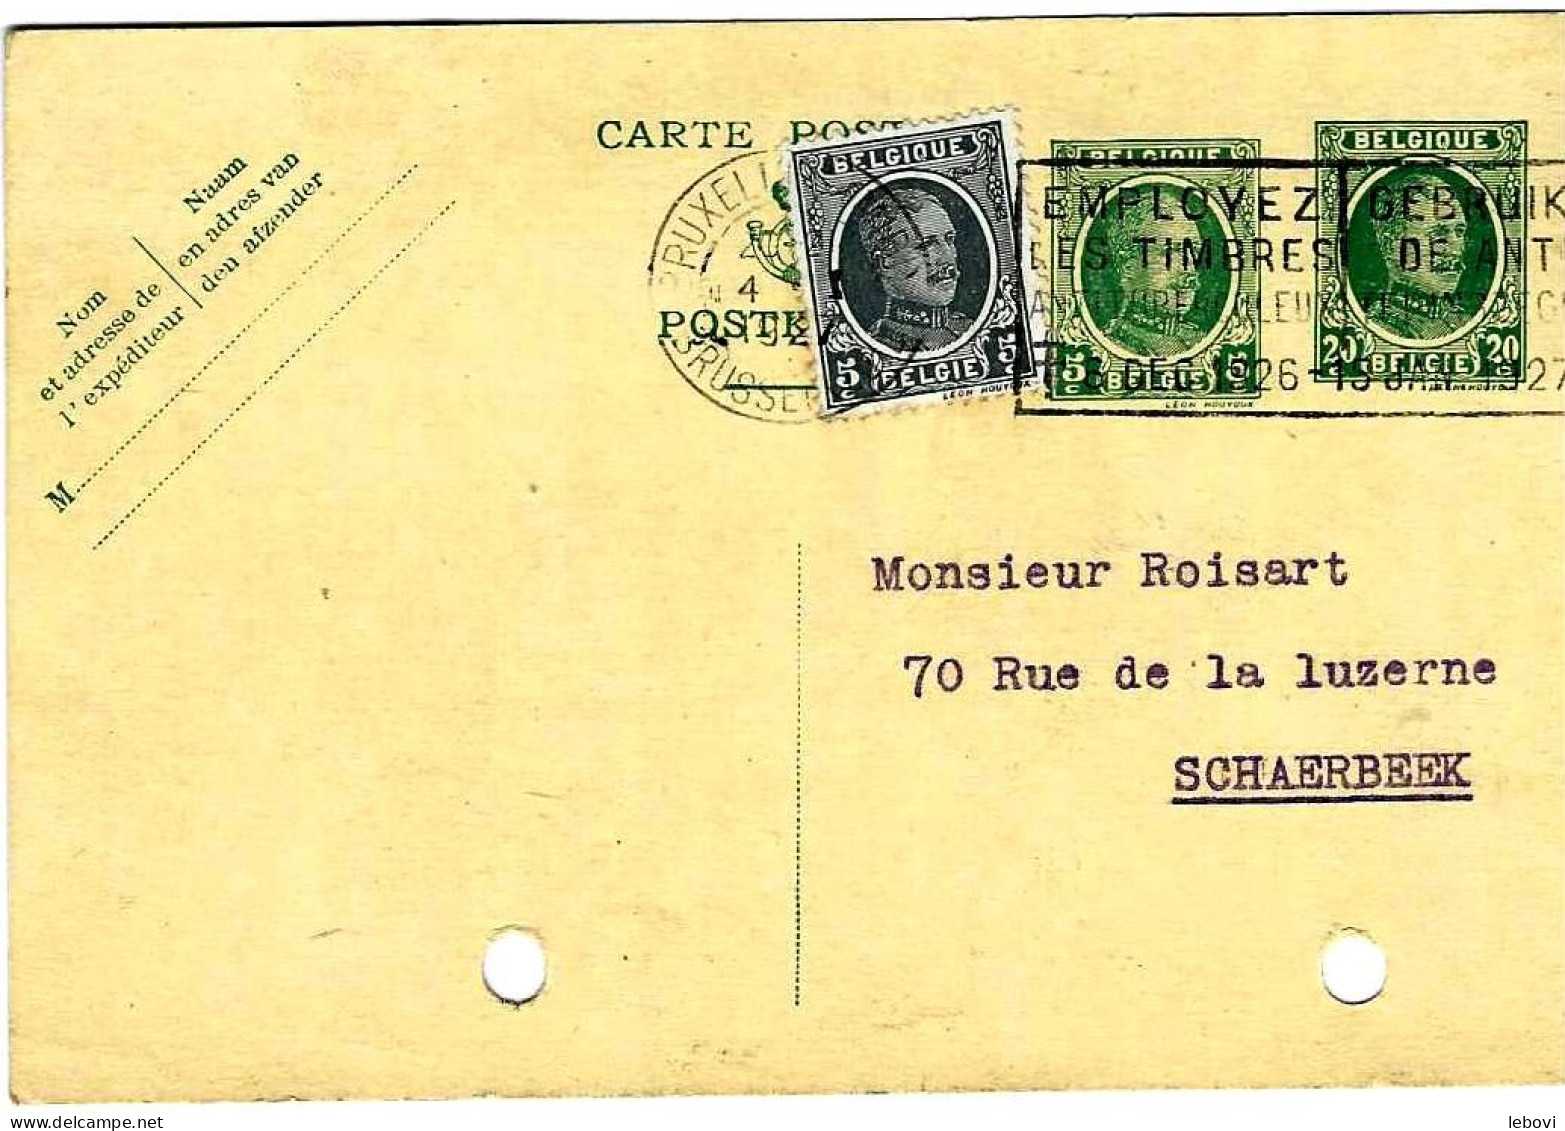 Carte Postale Pré Imprimée – Type Houyoux 20 + 5 Centimes (1926) + Timbre De 5 Centimes - Cartes Postales 1909-1934